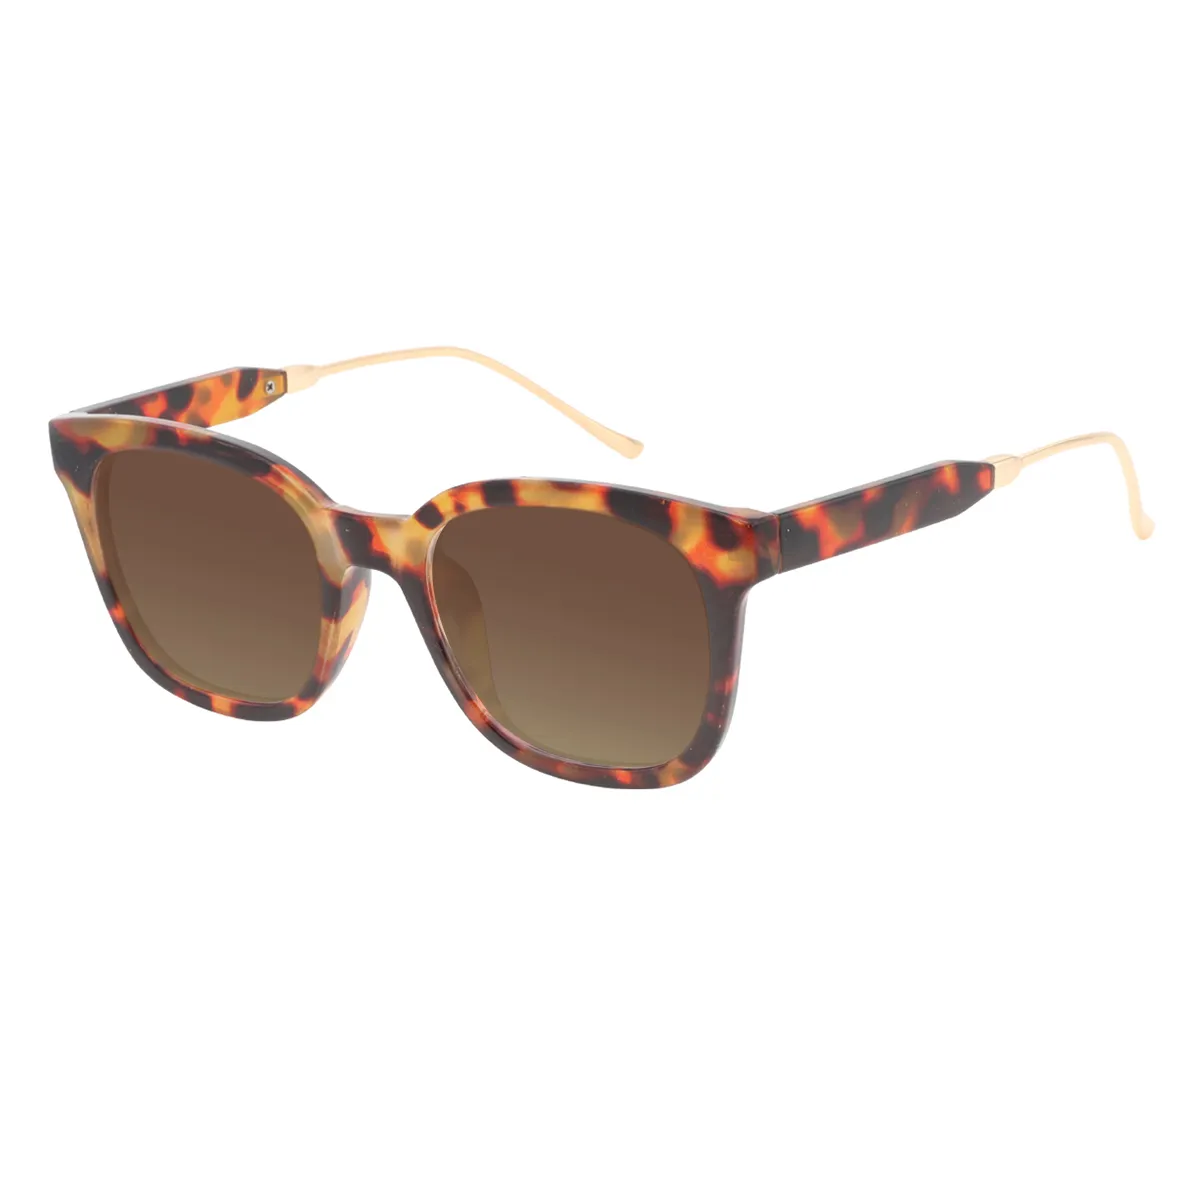 Werner - Square Demi Sunglasses for Women